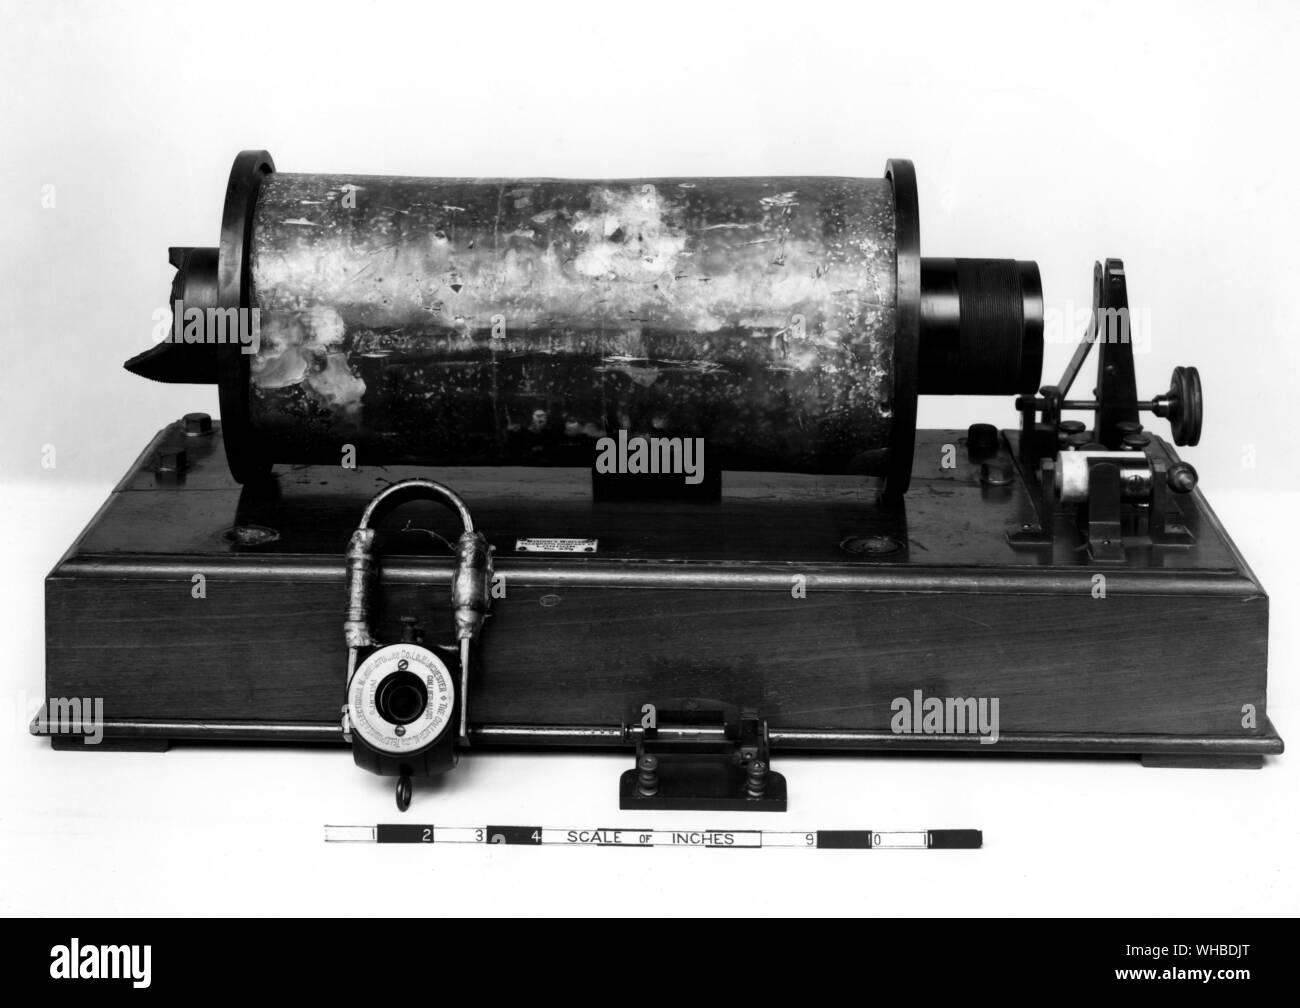 Vorrichtung zur Übertragung der ersten Übermittlung verwendet - Marconi Wireless Telegraph Company - Marchese Guglielmo Marconi (25. April 1874 - vom 20. Juli 1937) war ein italienischer Erfinder der Gemischten italienisch und Scottish-Irish Ethnizität, der für seine Entwicklung einer radiotelegraph-System, die als die Grundlage für die Errichtung zahlreicher verbundenen Unternehmen weltweit serviert bekannt. Er teilte die 1909 Nobelpreis für Physik mit Karl Ferdinand Braun, in Anerkennung ihrer Verdienste um die Entwicklung der drahtlosen Telegrafie. [. Stockfoto